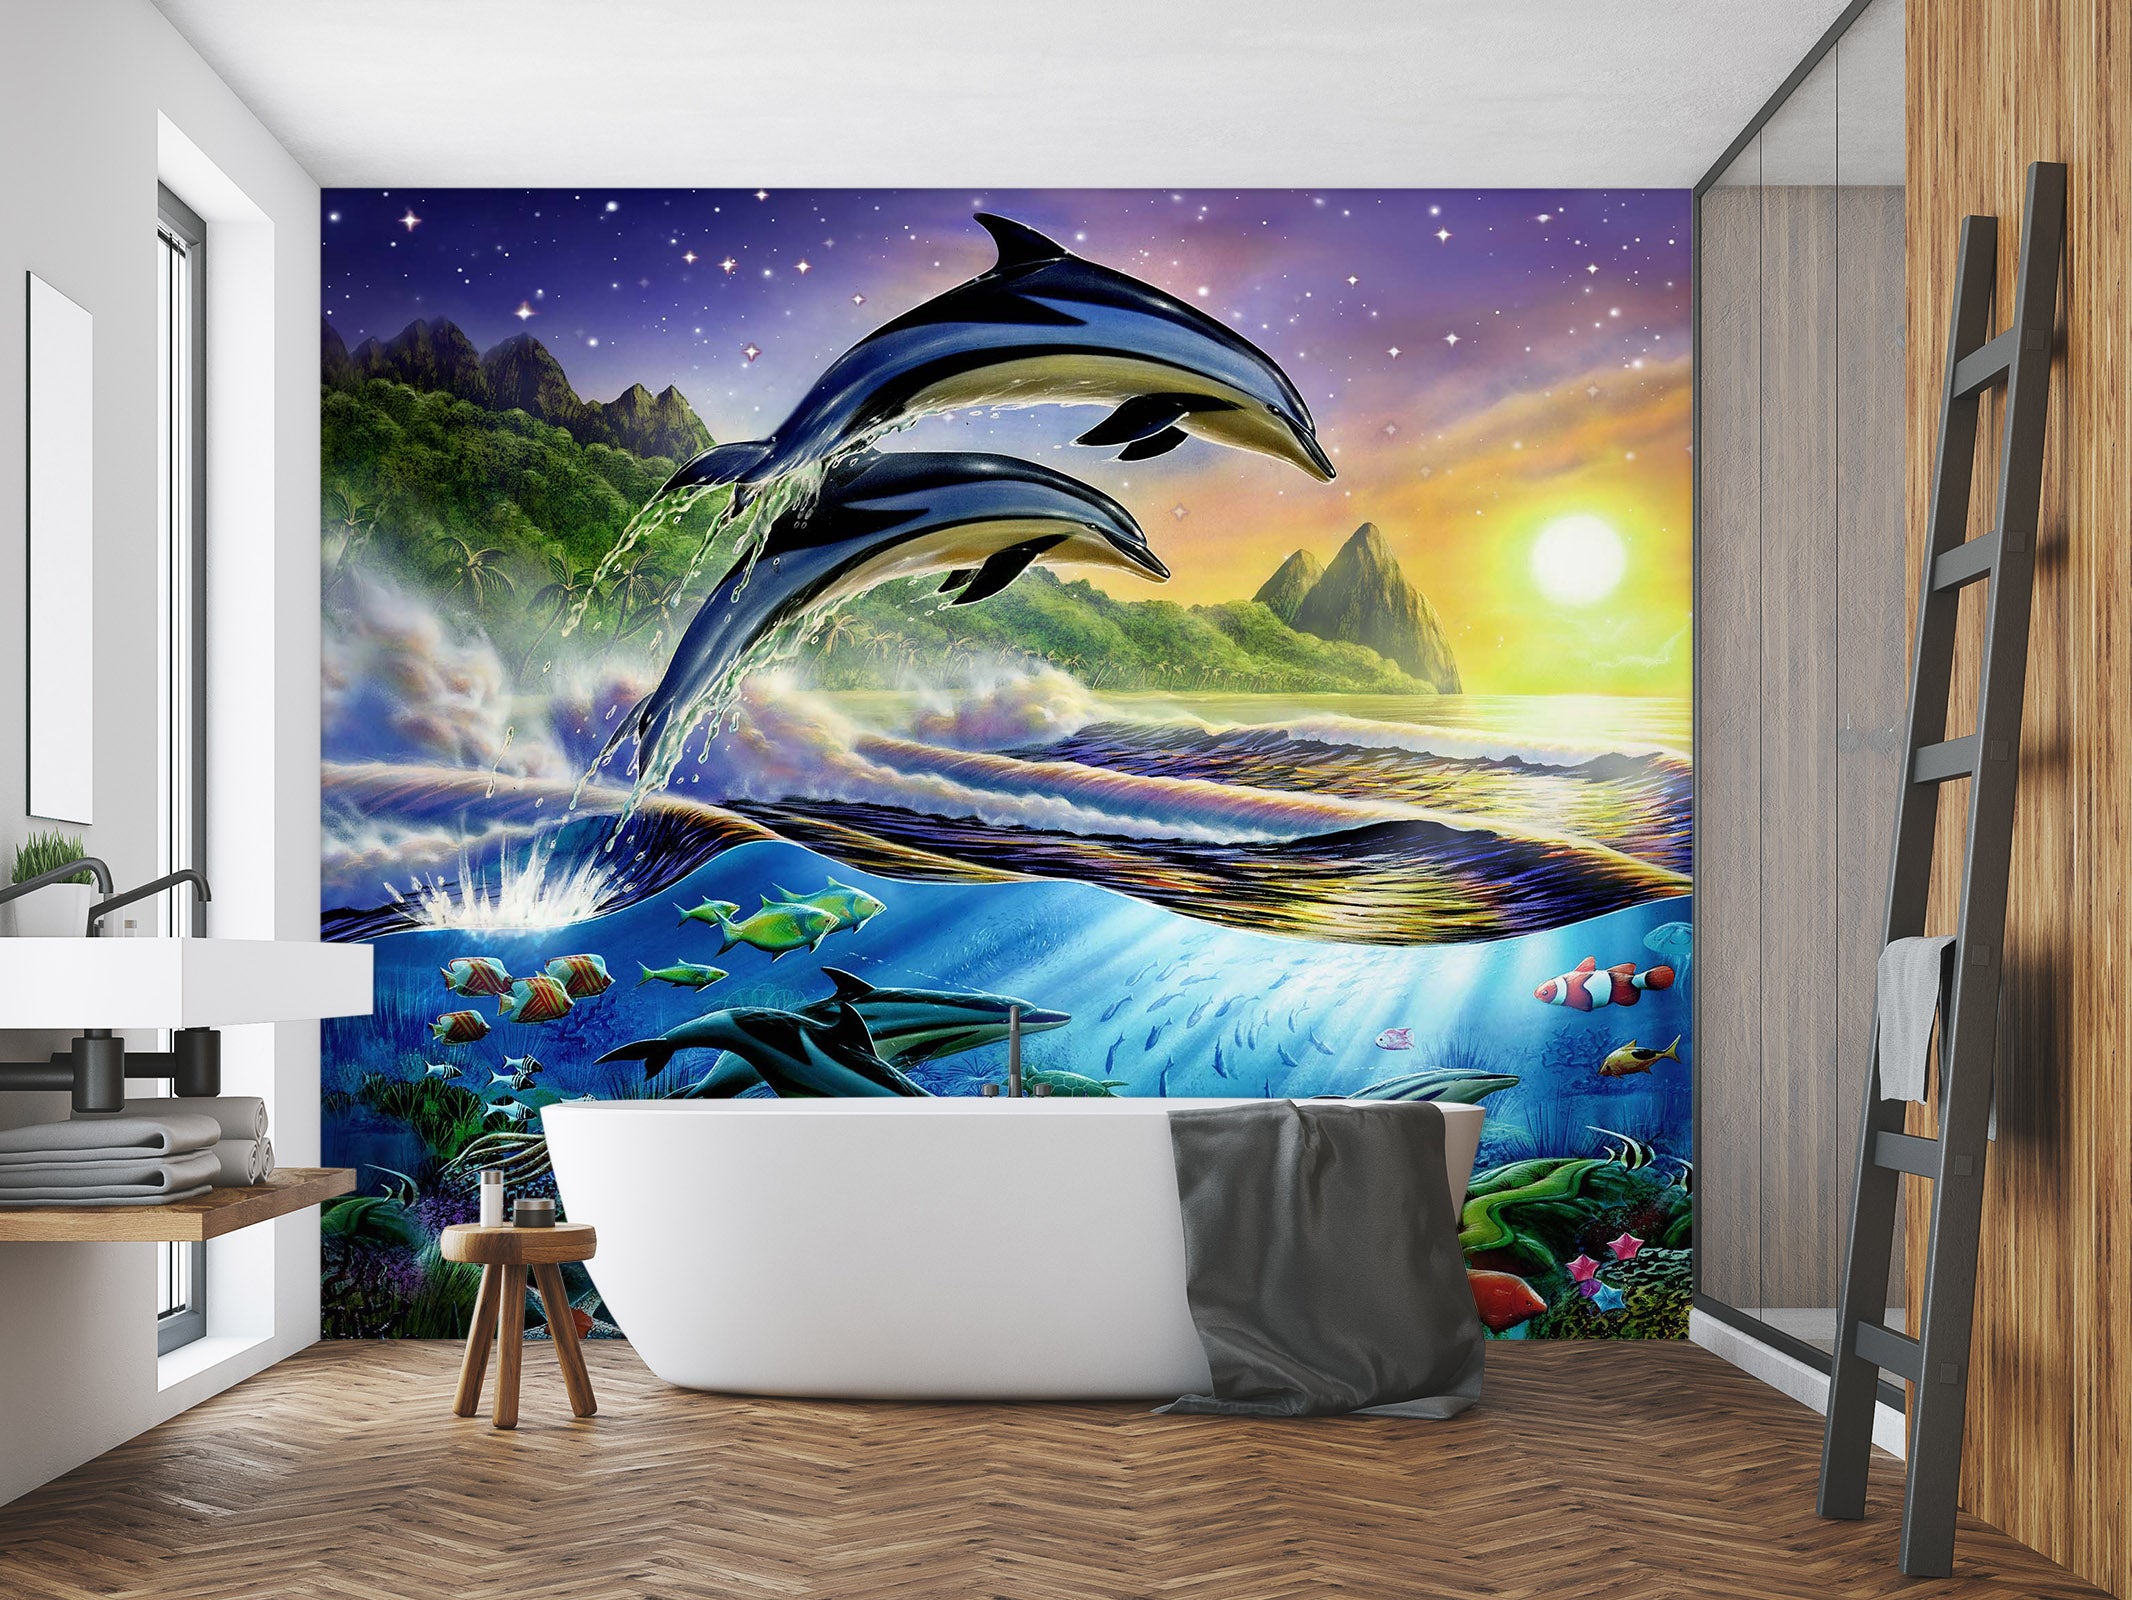 3D Sunset Dolphin 1399 Adrian Chesterman Wall Mural Wall Murals